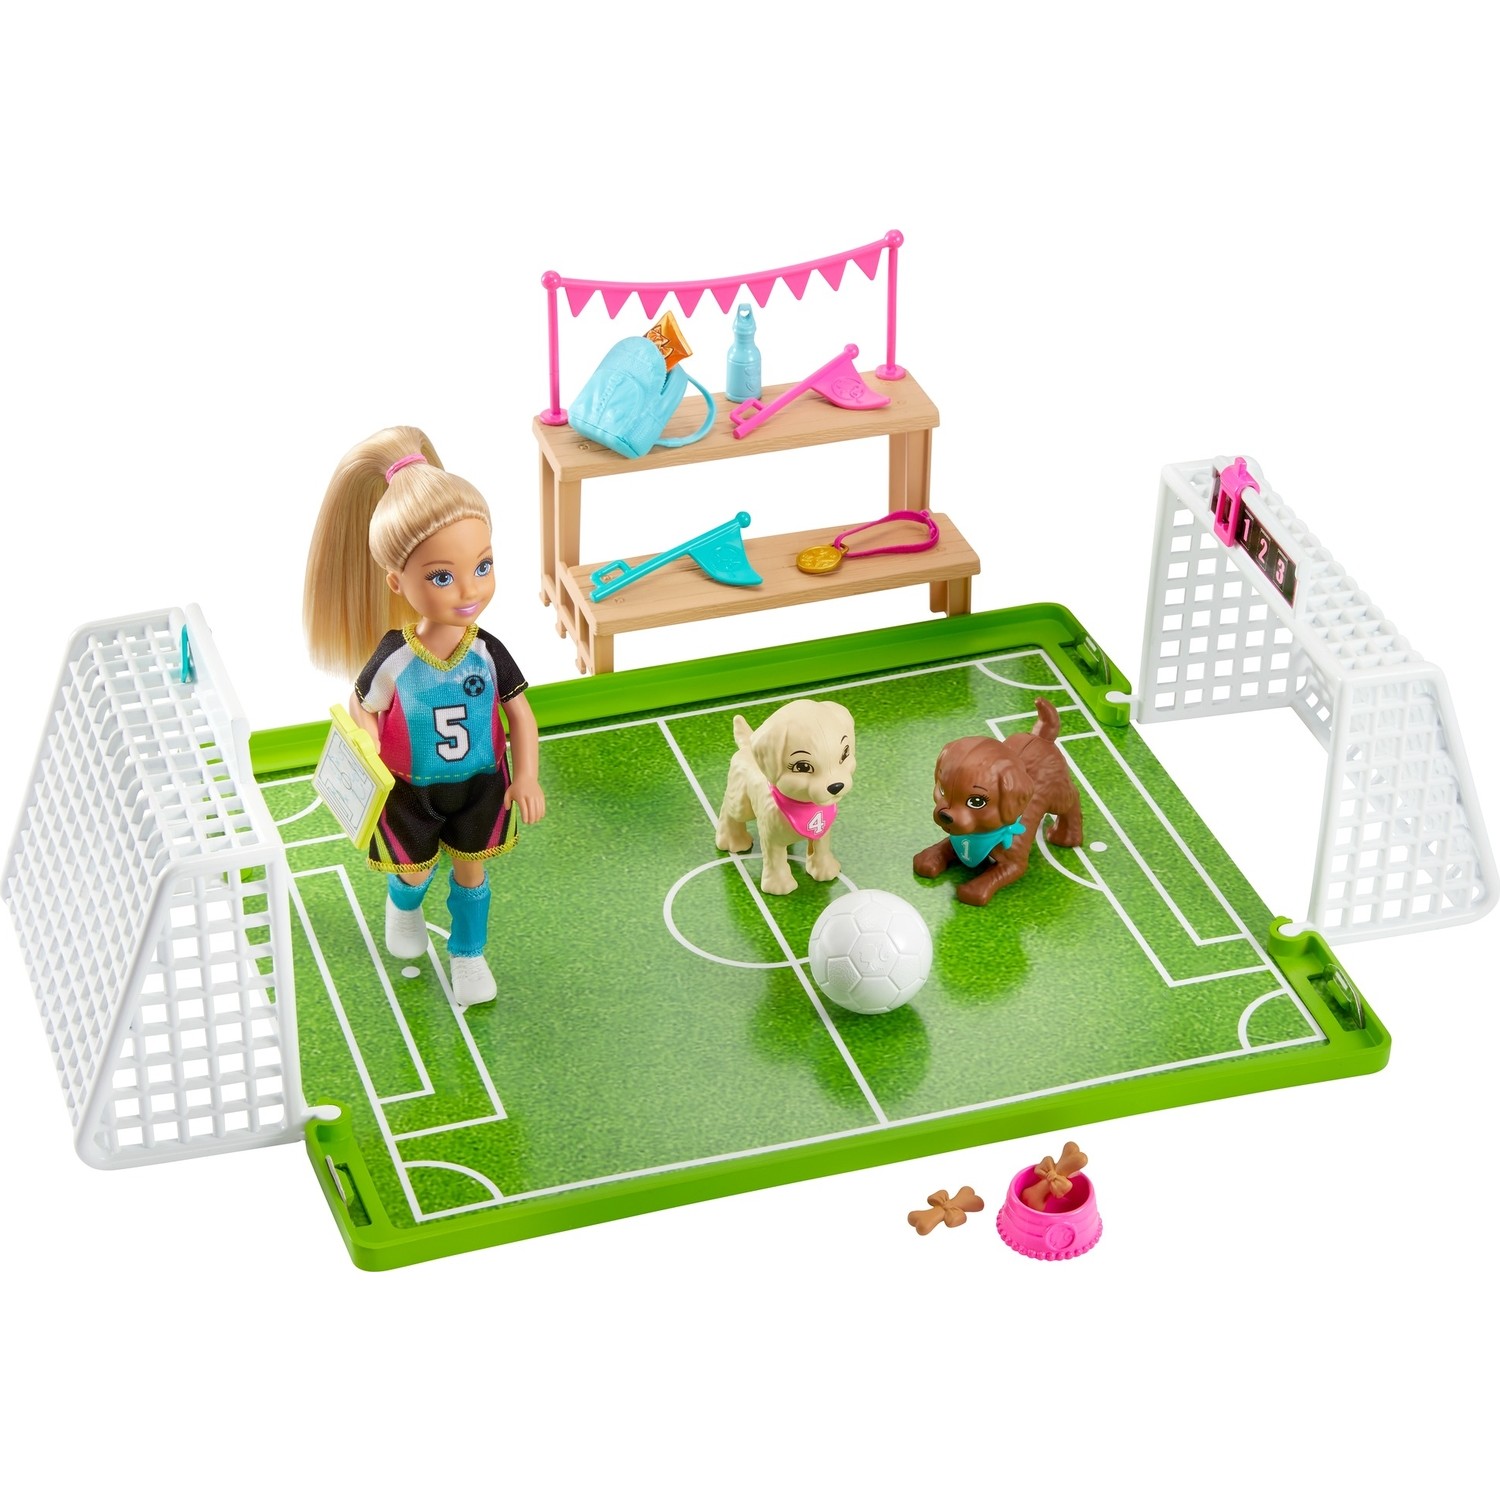 Игровой набор Barbie Челси играет в футбол GHK37 игровой набор barbie челси магазин кафе ghv76